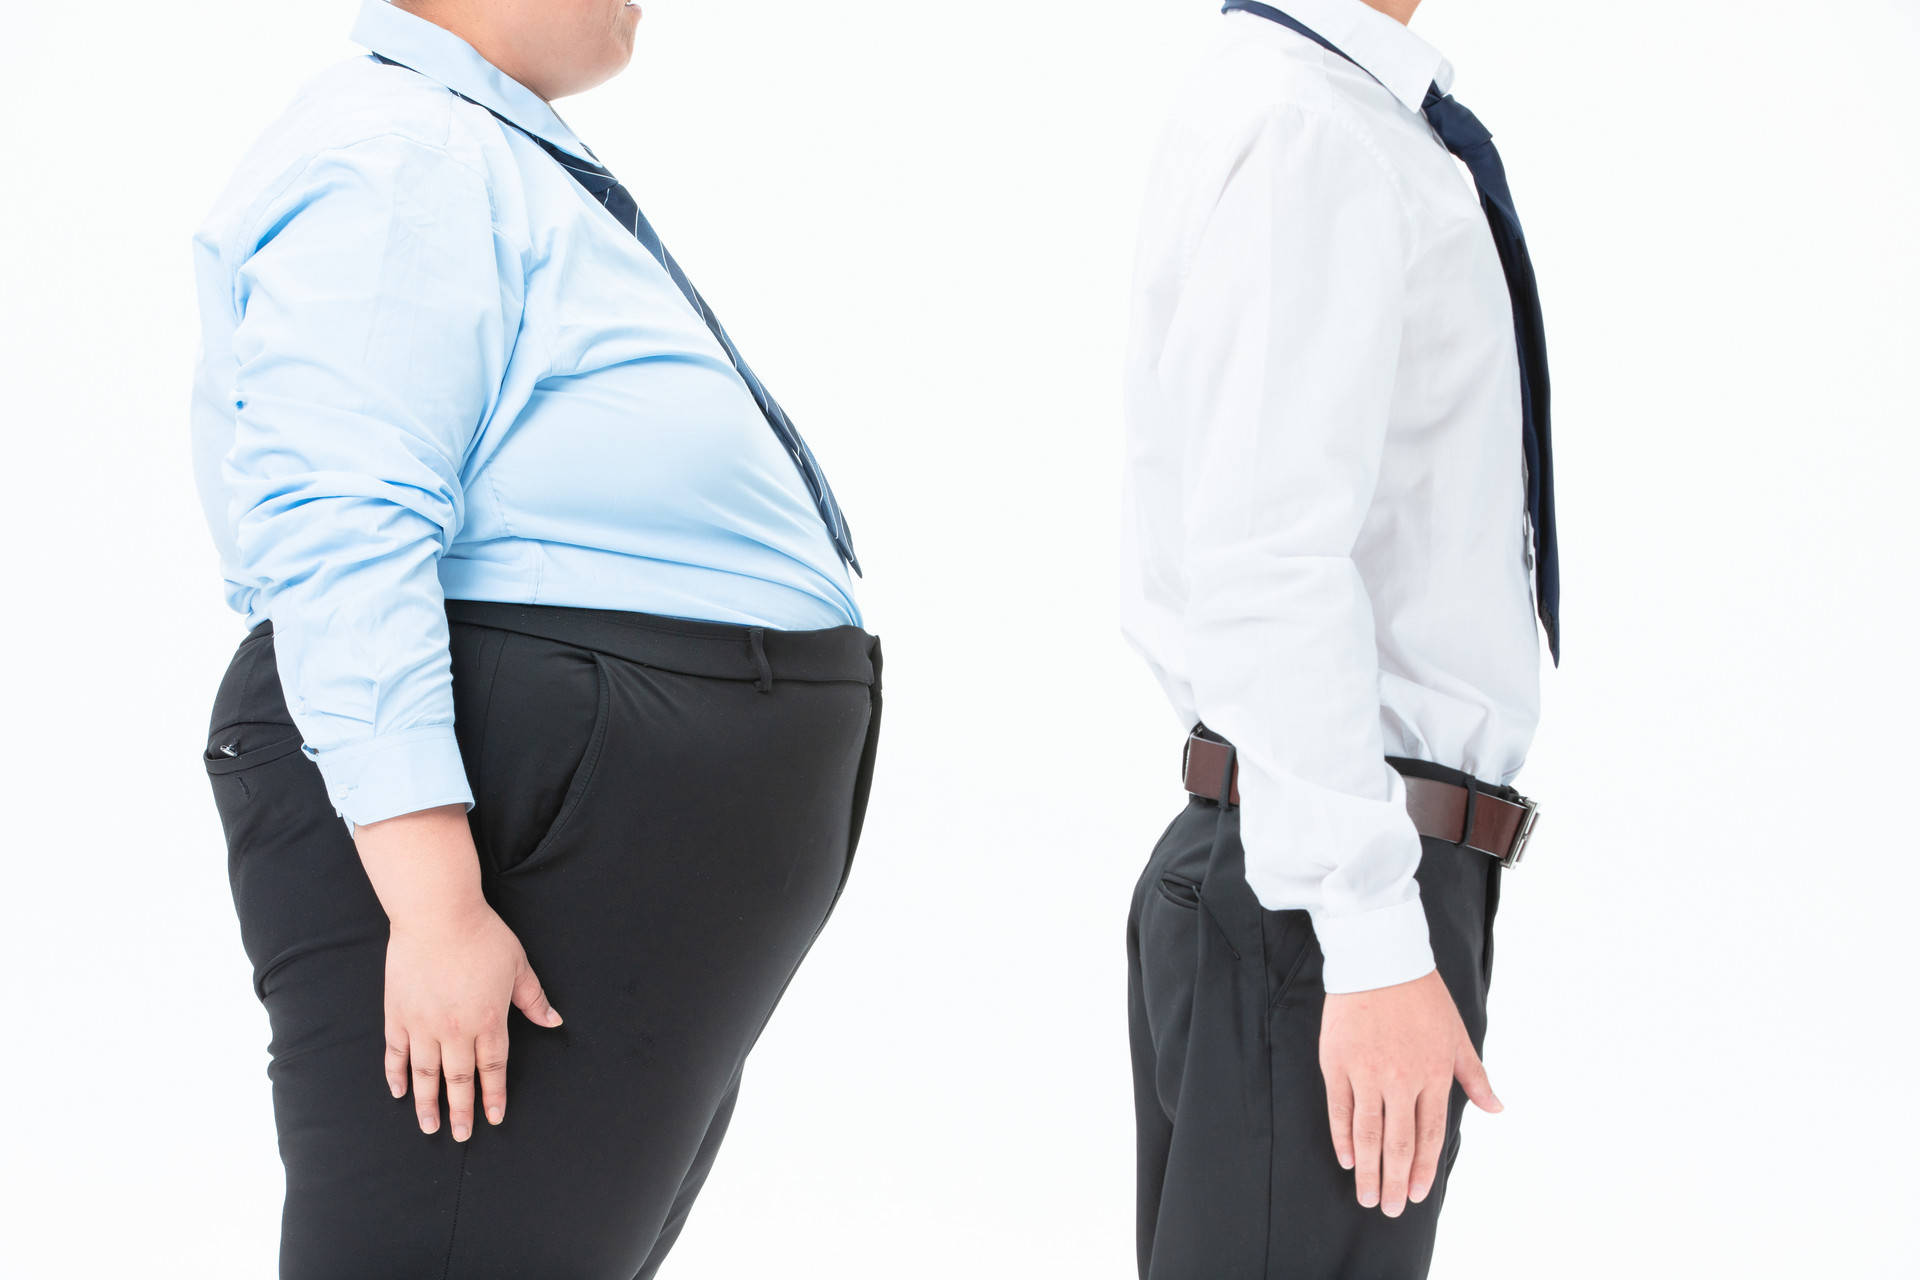 为什么肥胖的人,更容易患慢性疾病,老得更快?